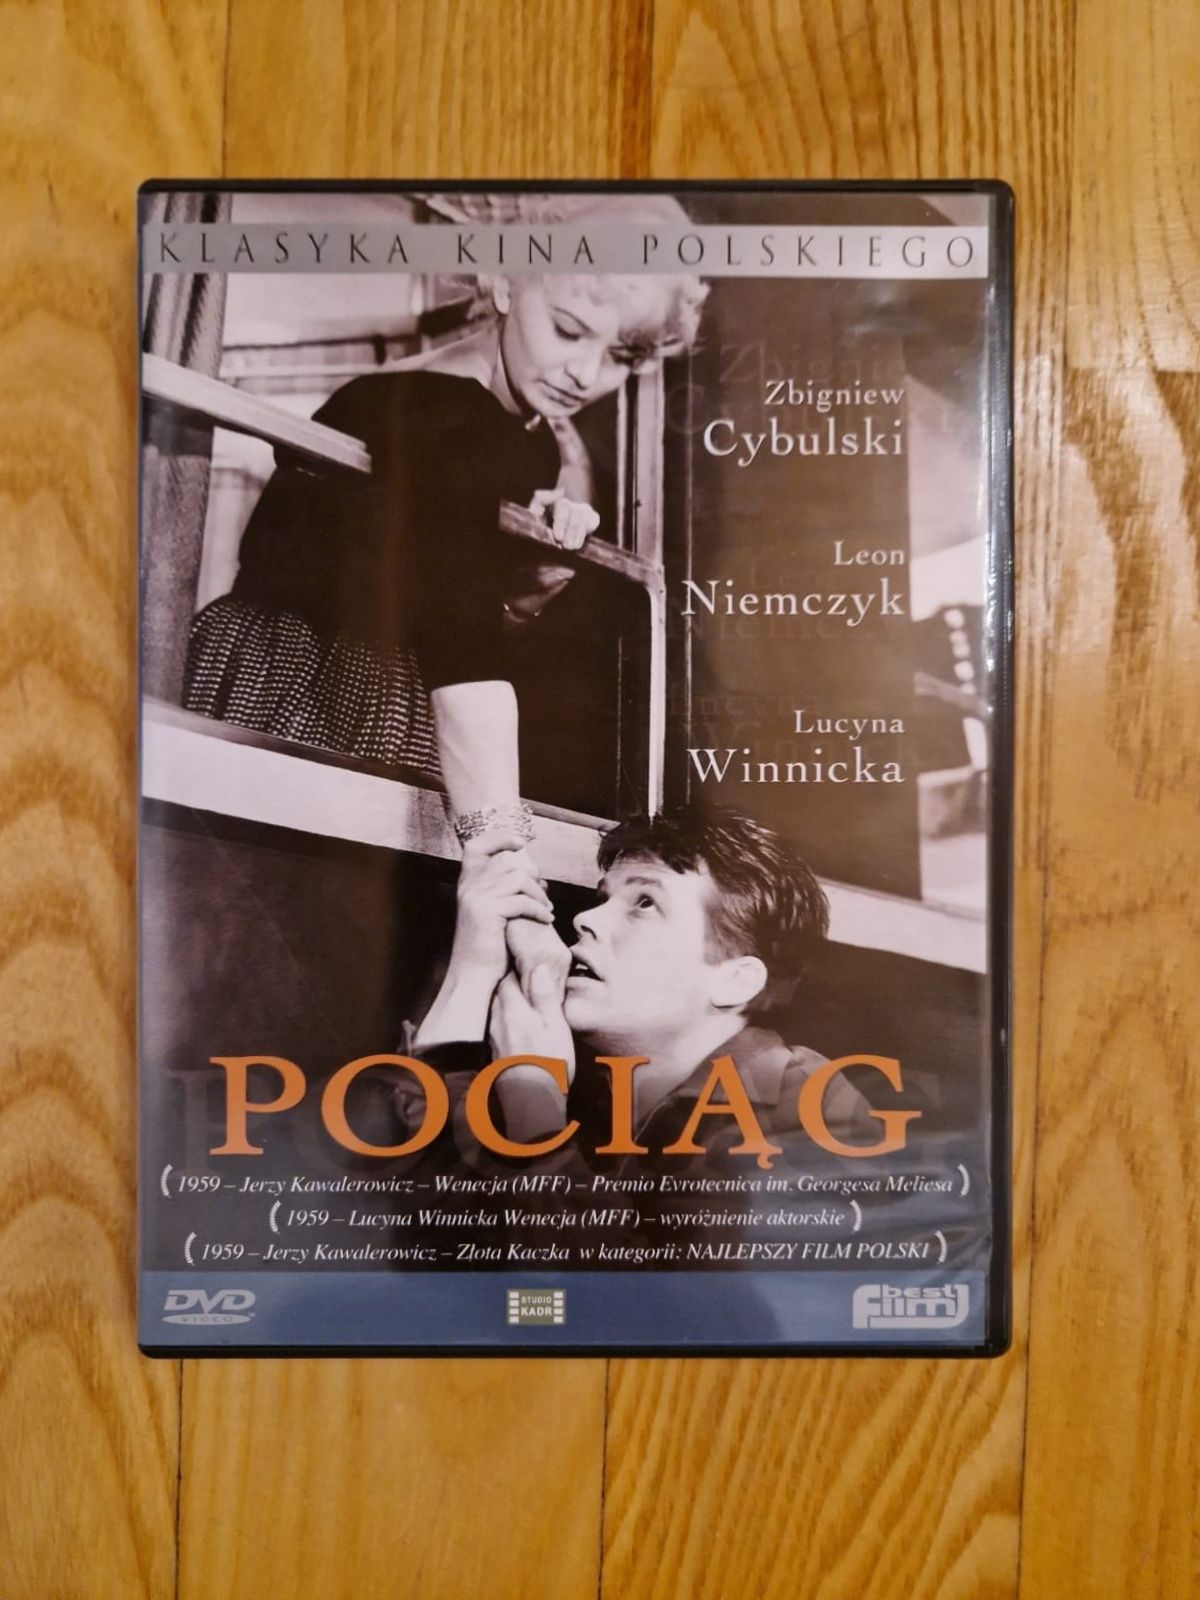 Pociąg, J. Kawalerowicz, Klasyka Kina Polskiego DVD